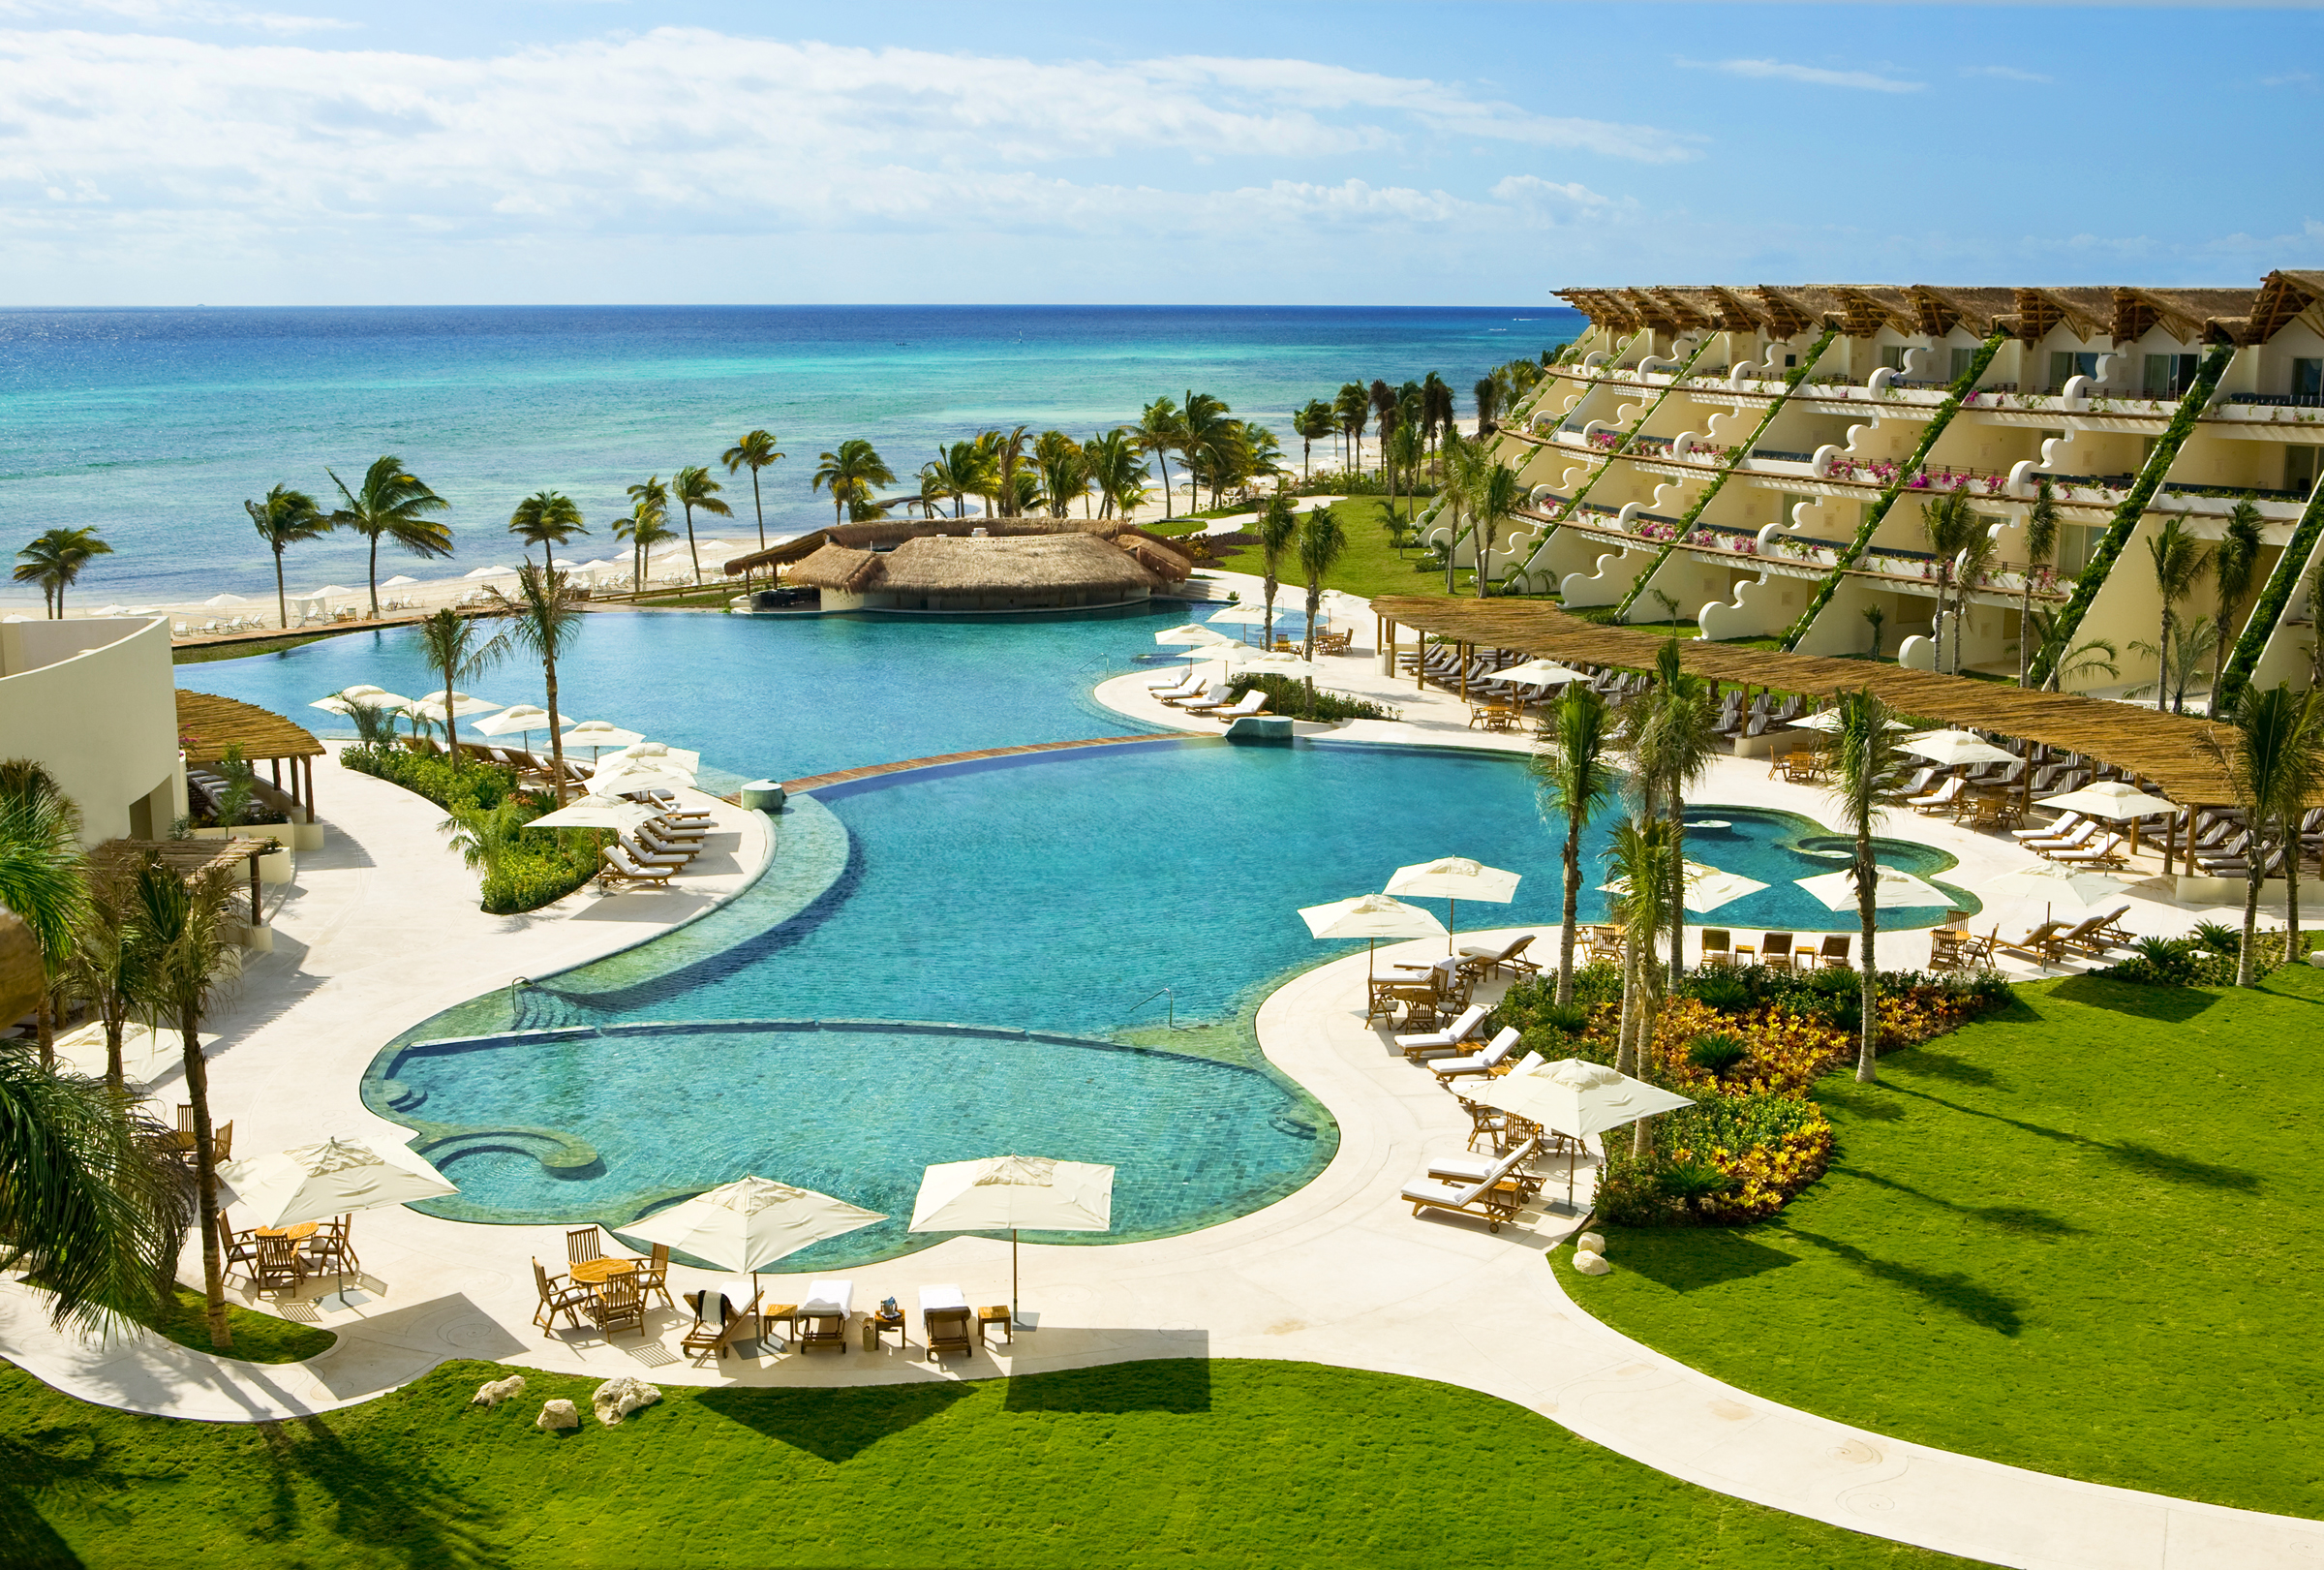 Preferred Hotels incrementó 58% sus ingresos en México.